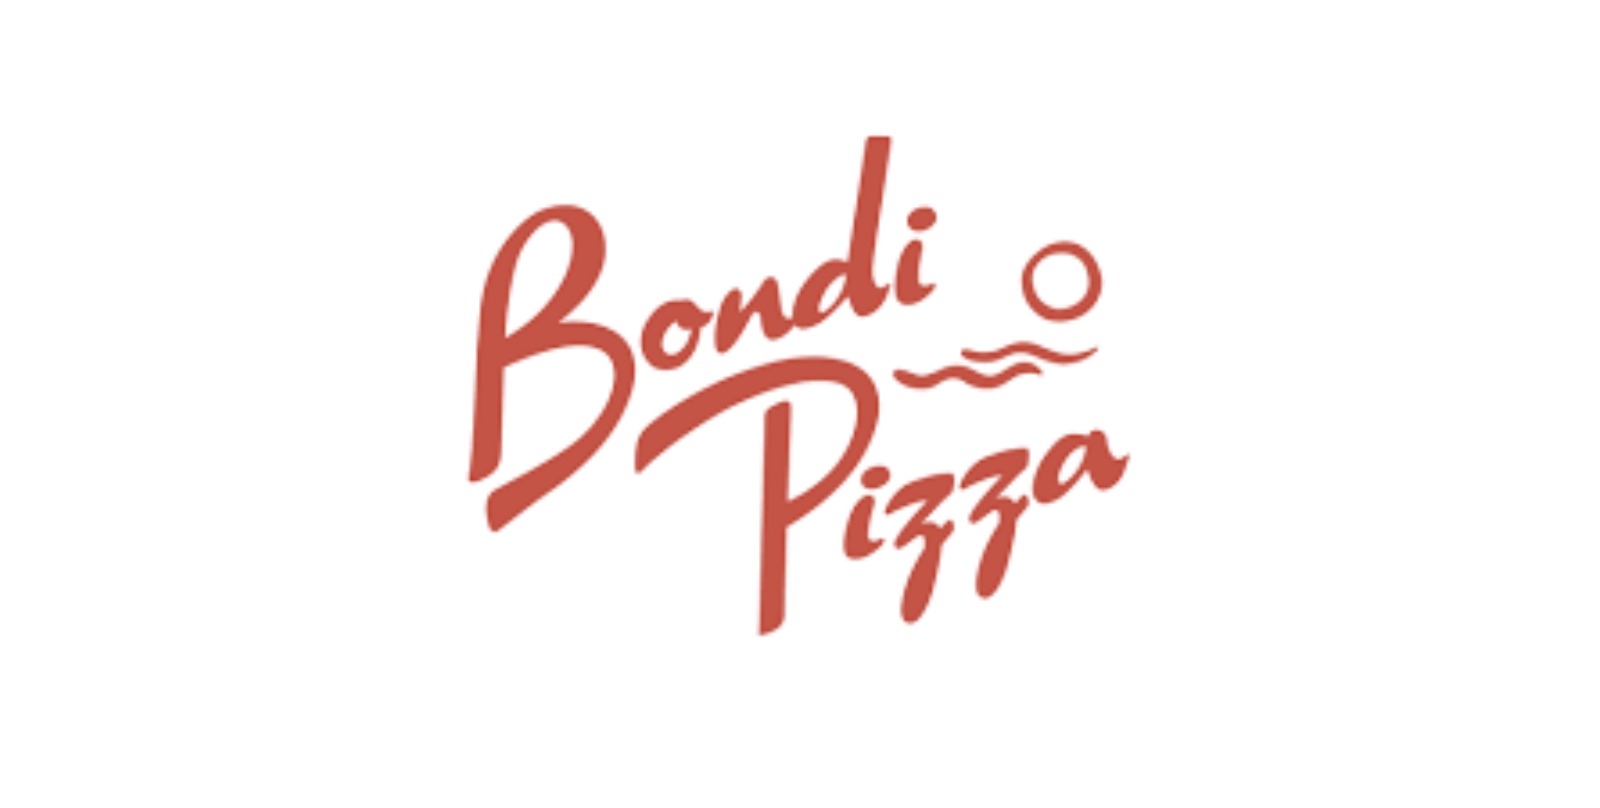 bondi pizza menu prices australia